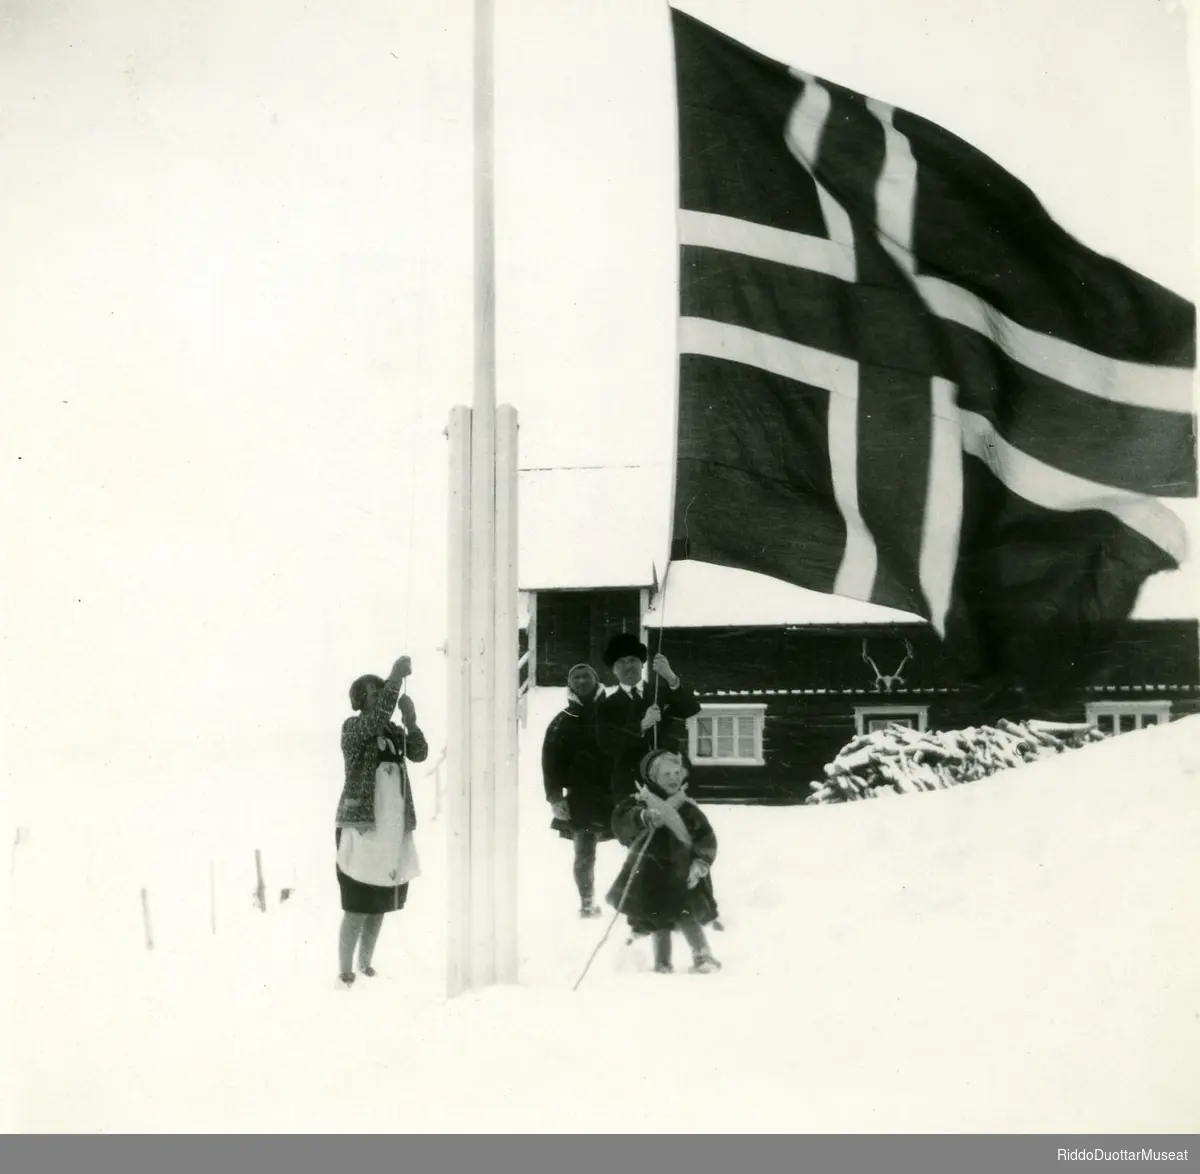 Njeallje olbmo norgga leavgga geassimen leavgastolpui.
Tre personer og en unge heiser opp det Norske flag.